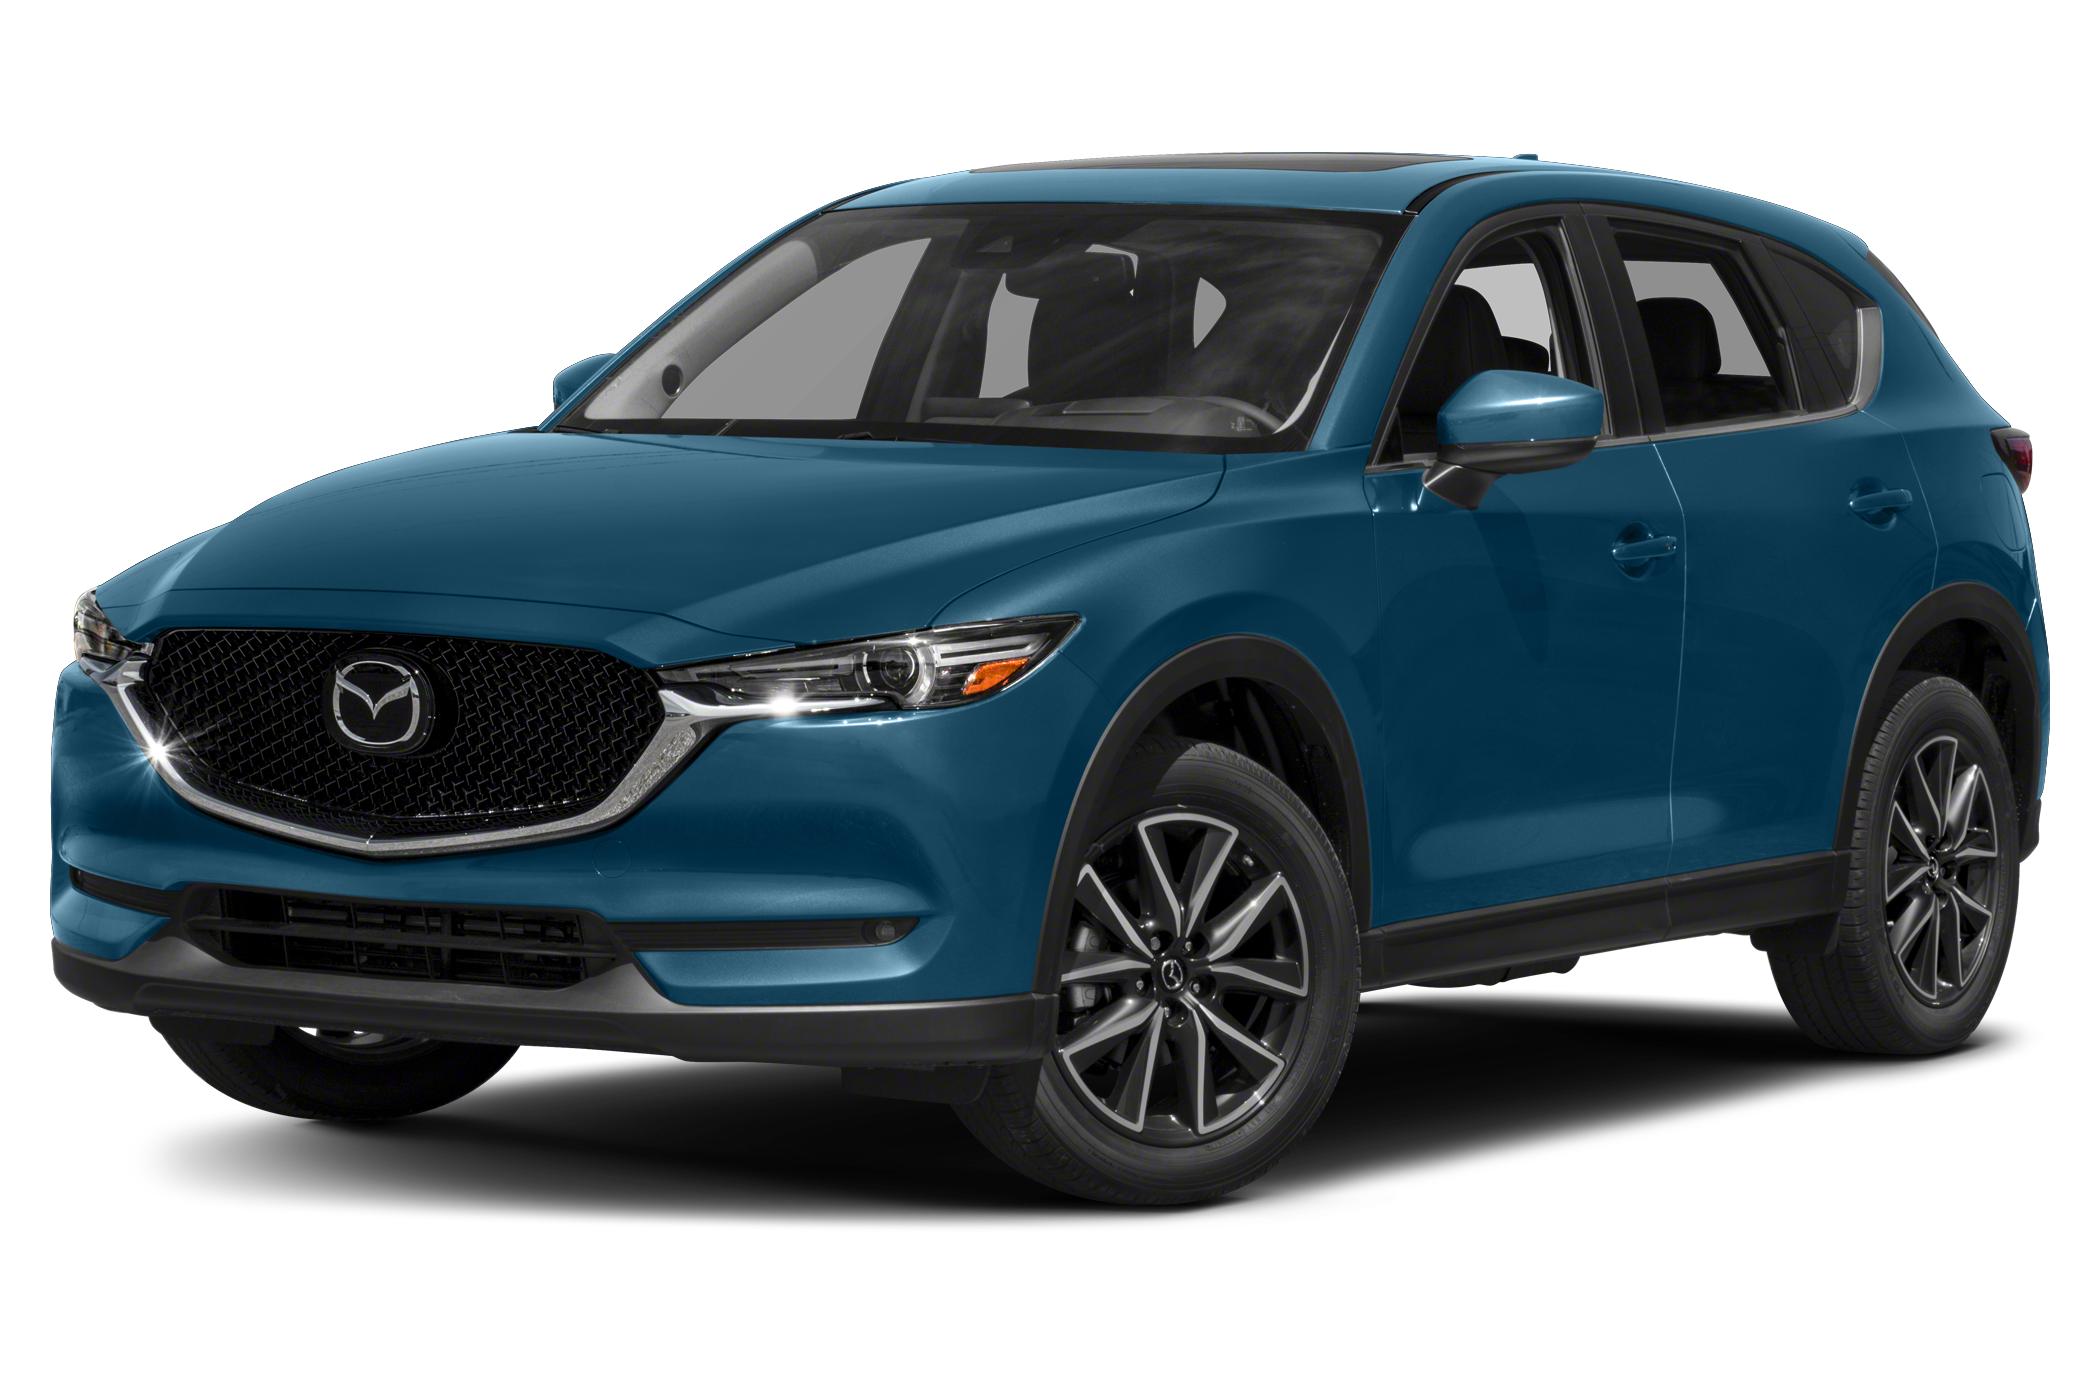 Used 2017 Mazda CX5 for Sale in Philadelphia, PA